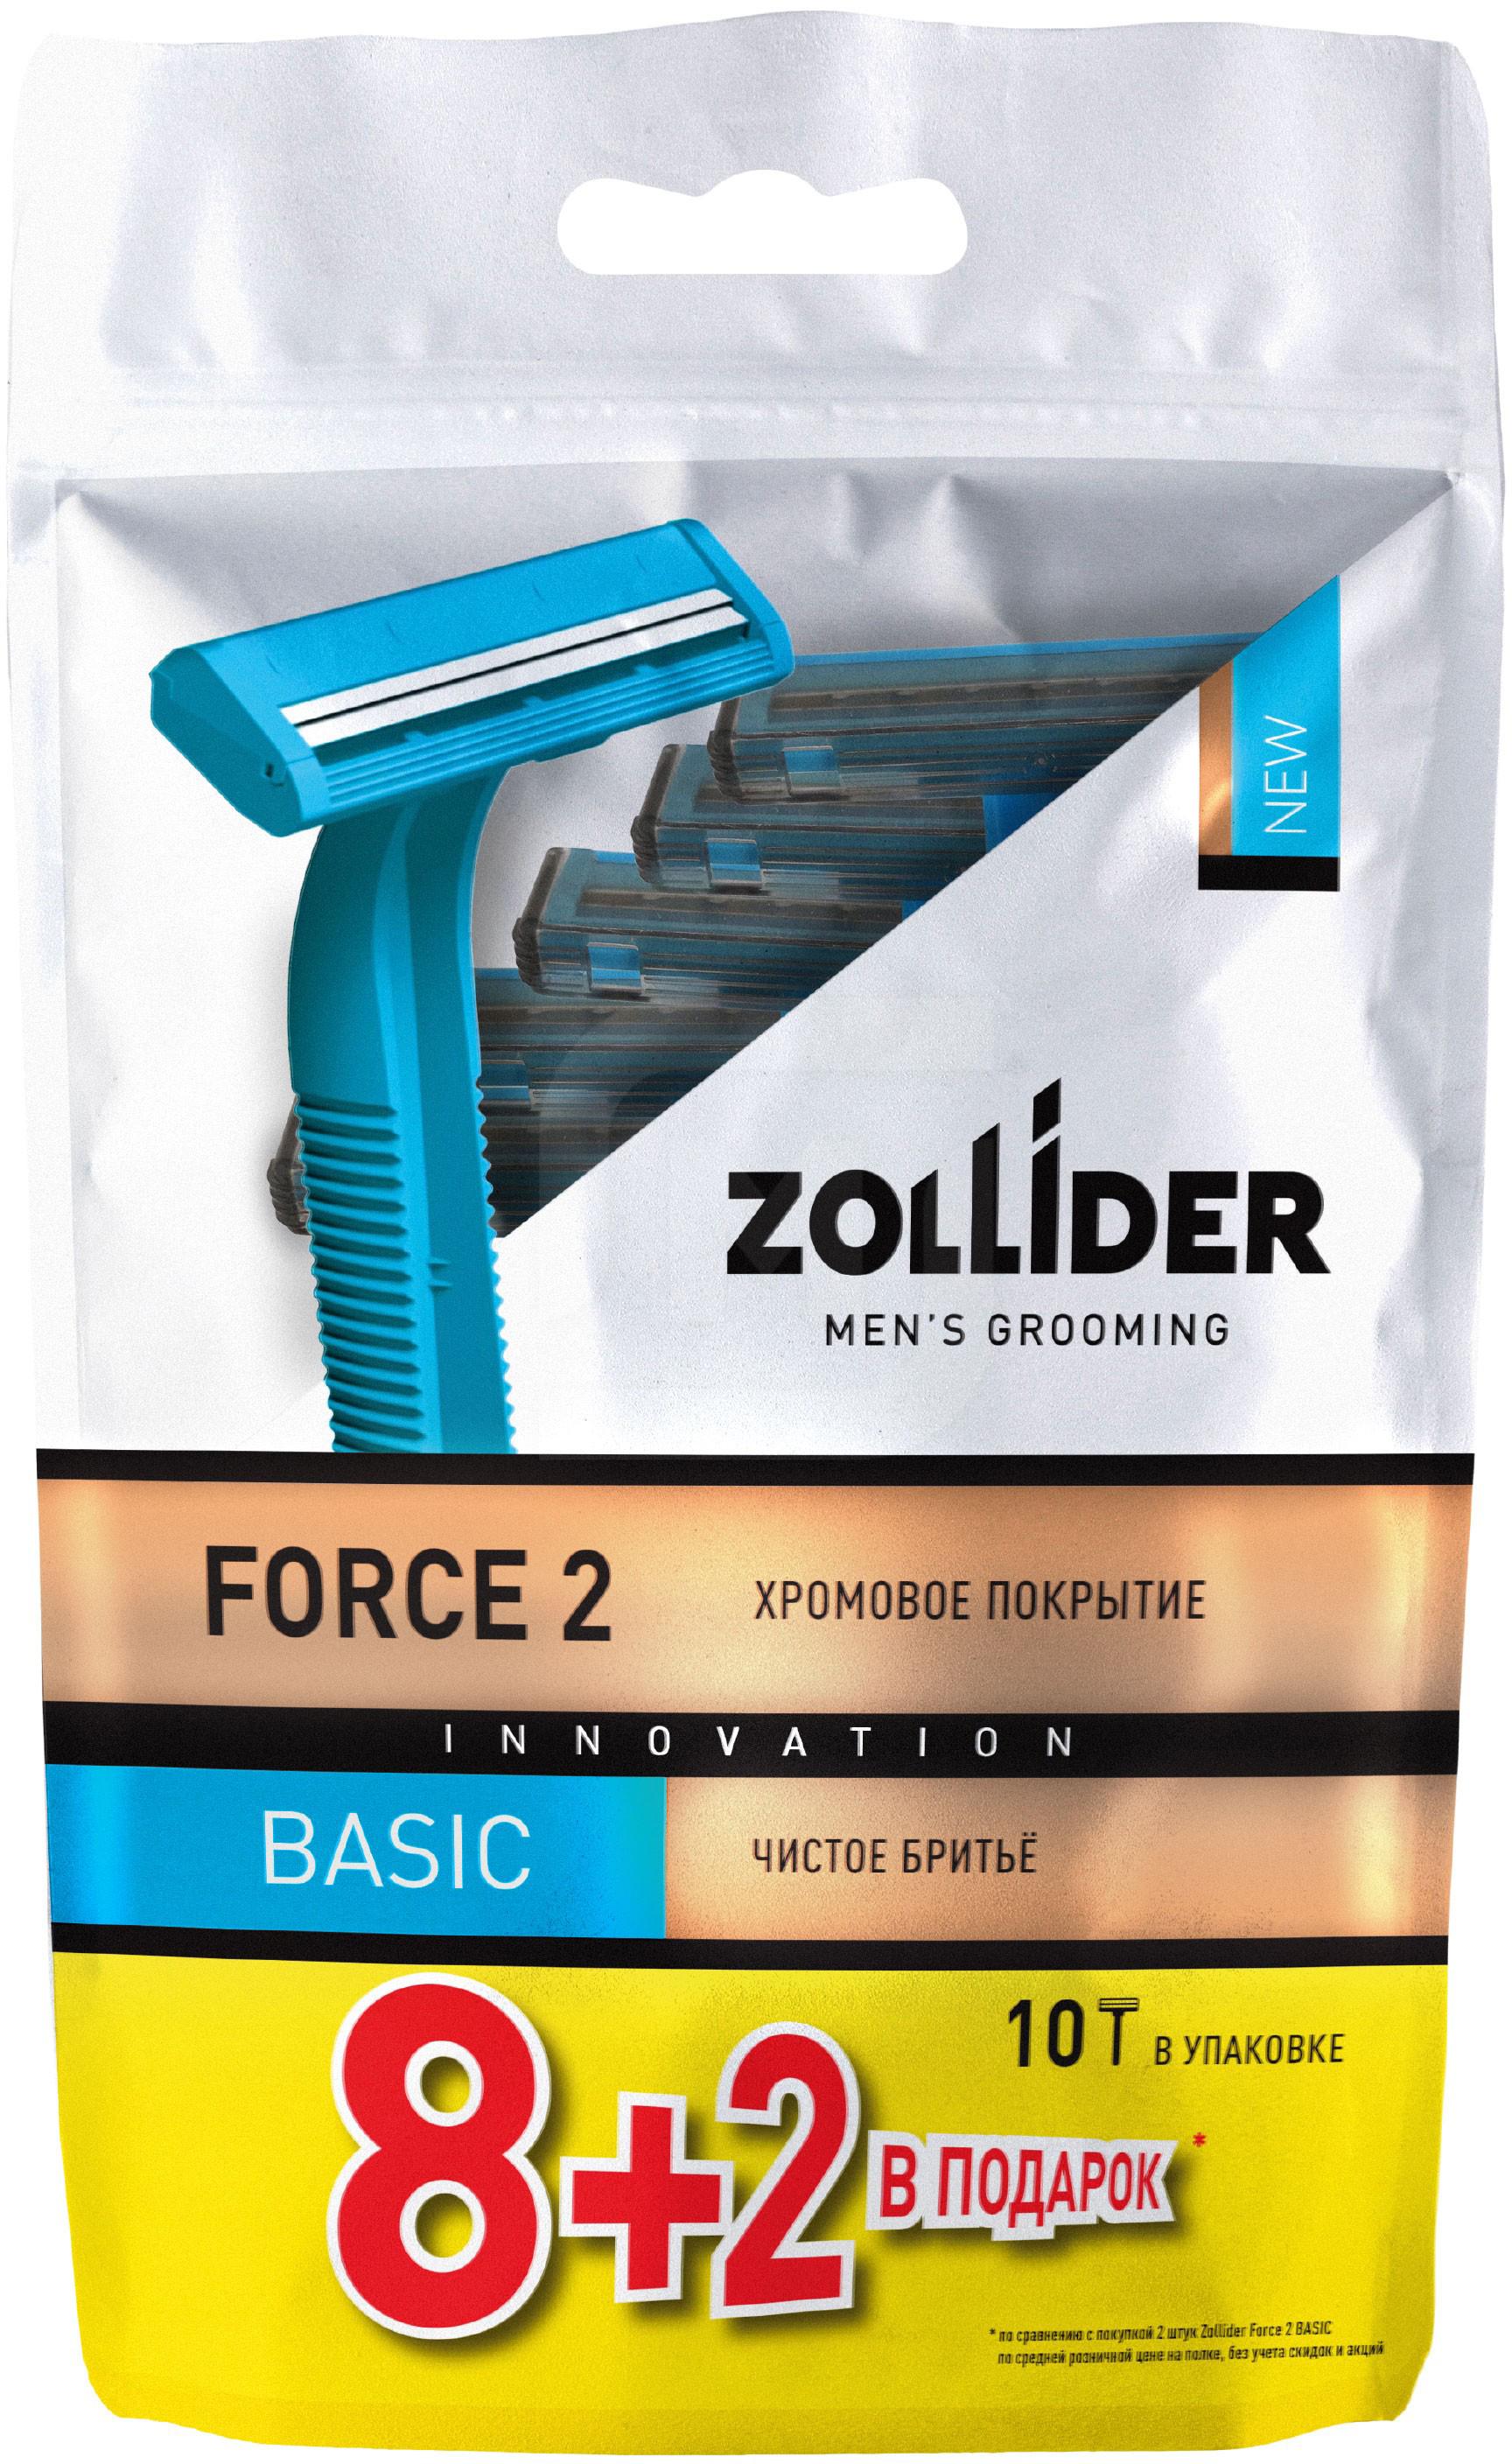 Бритвенные станки мужские Zollider Force 2 Basic одноразовые с двойными лезвиями 8 + 2 шт бритвенные станки мужские zollider force 3 max одноразовые с тройными лезвиями 4 1 шт